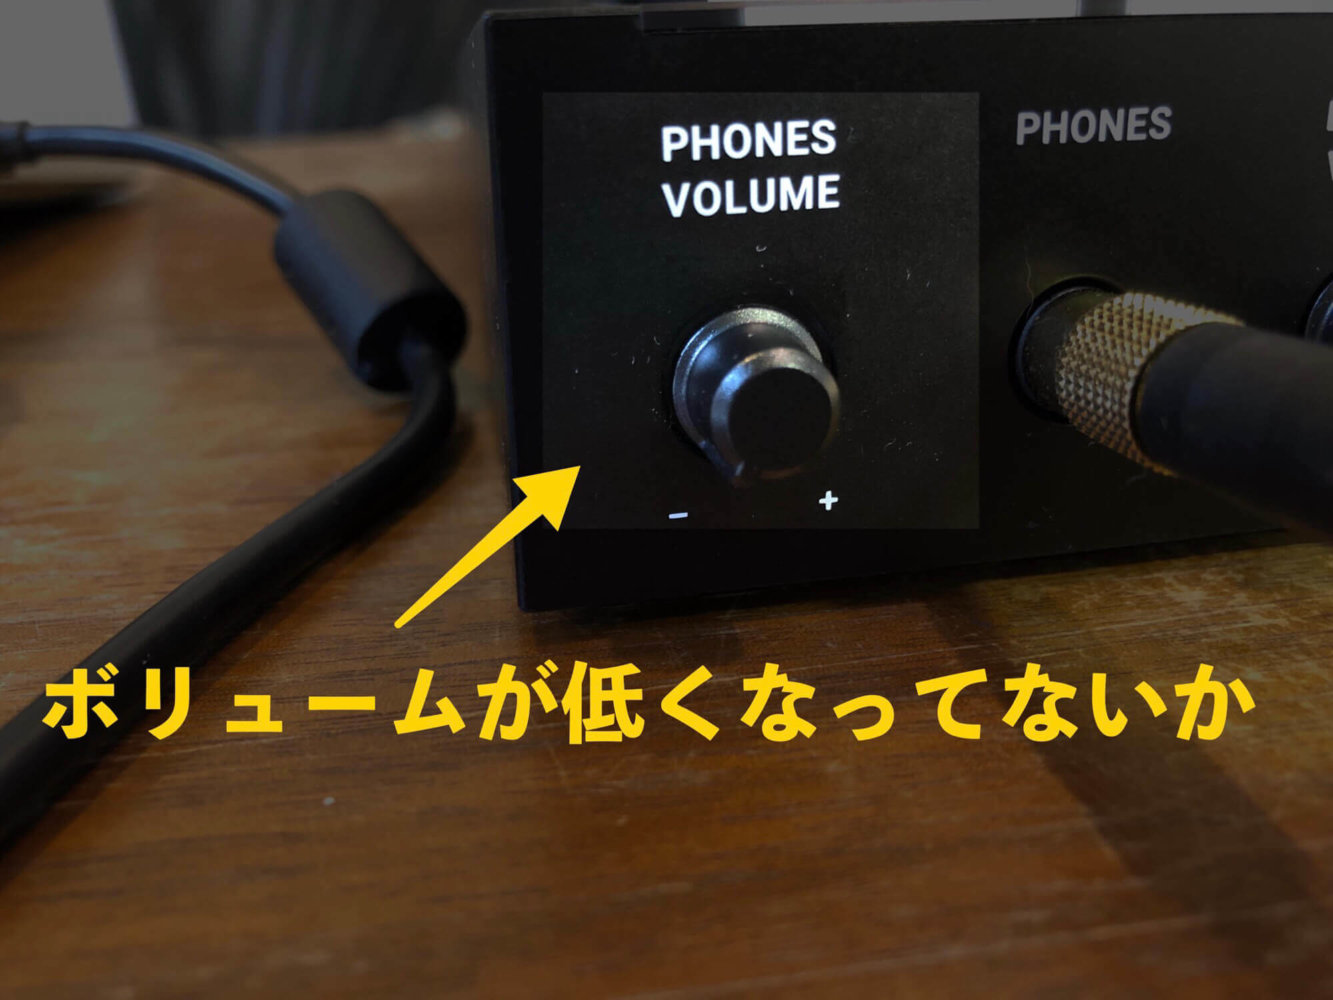 【PHONES VOLUME】の音量がゼロ、または低くなってないかチェック